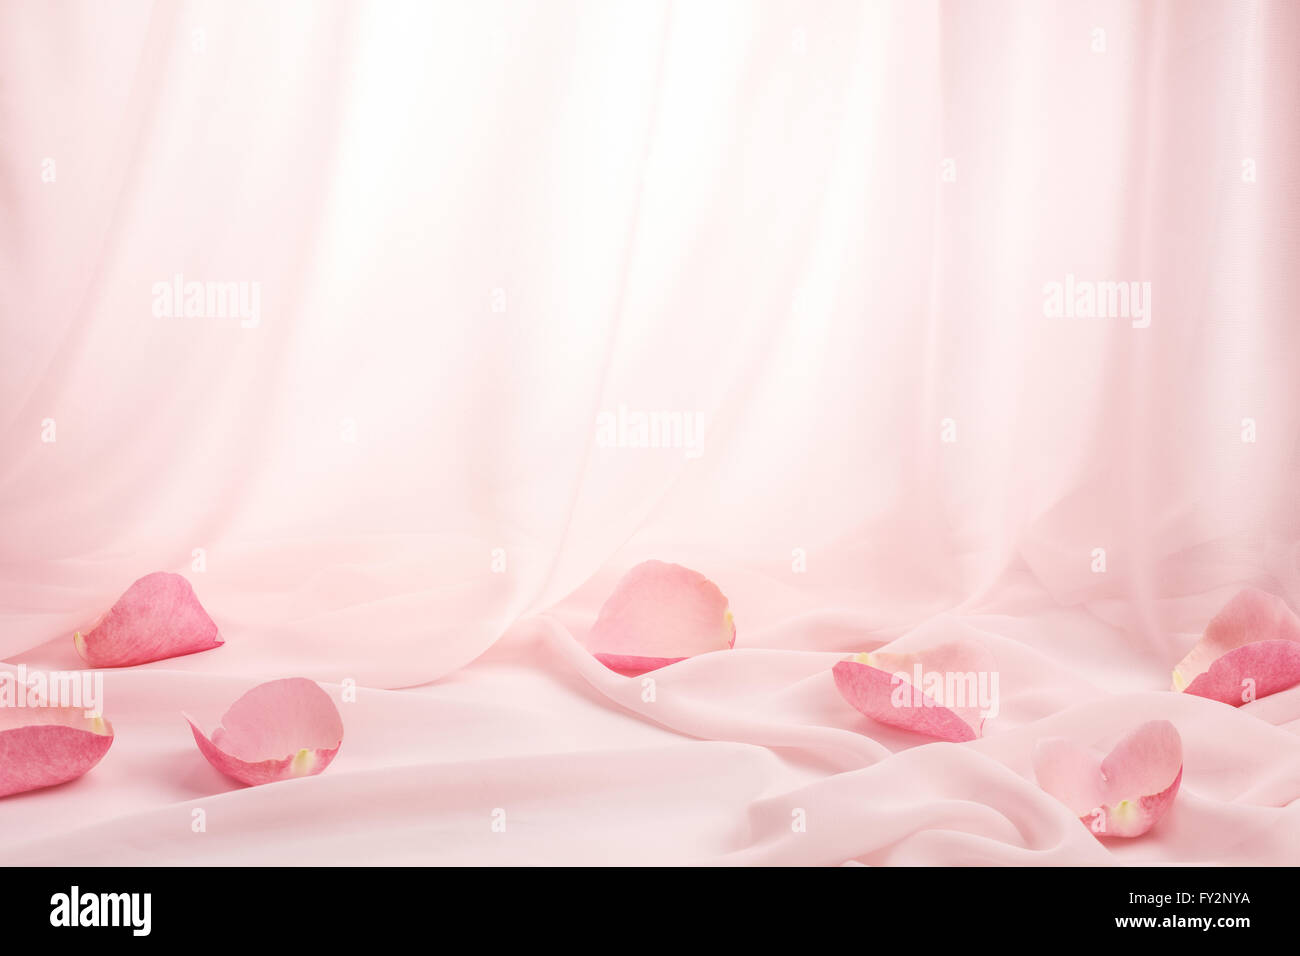 Pétalos de rosa de seda suave Foto de stock